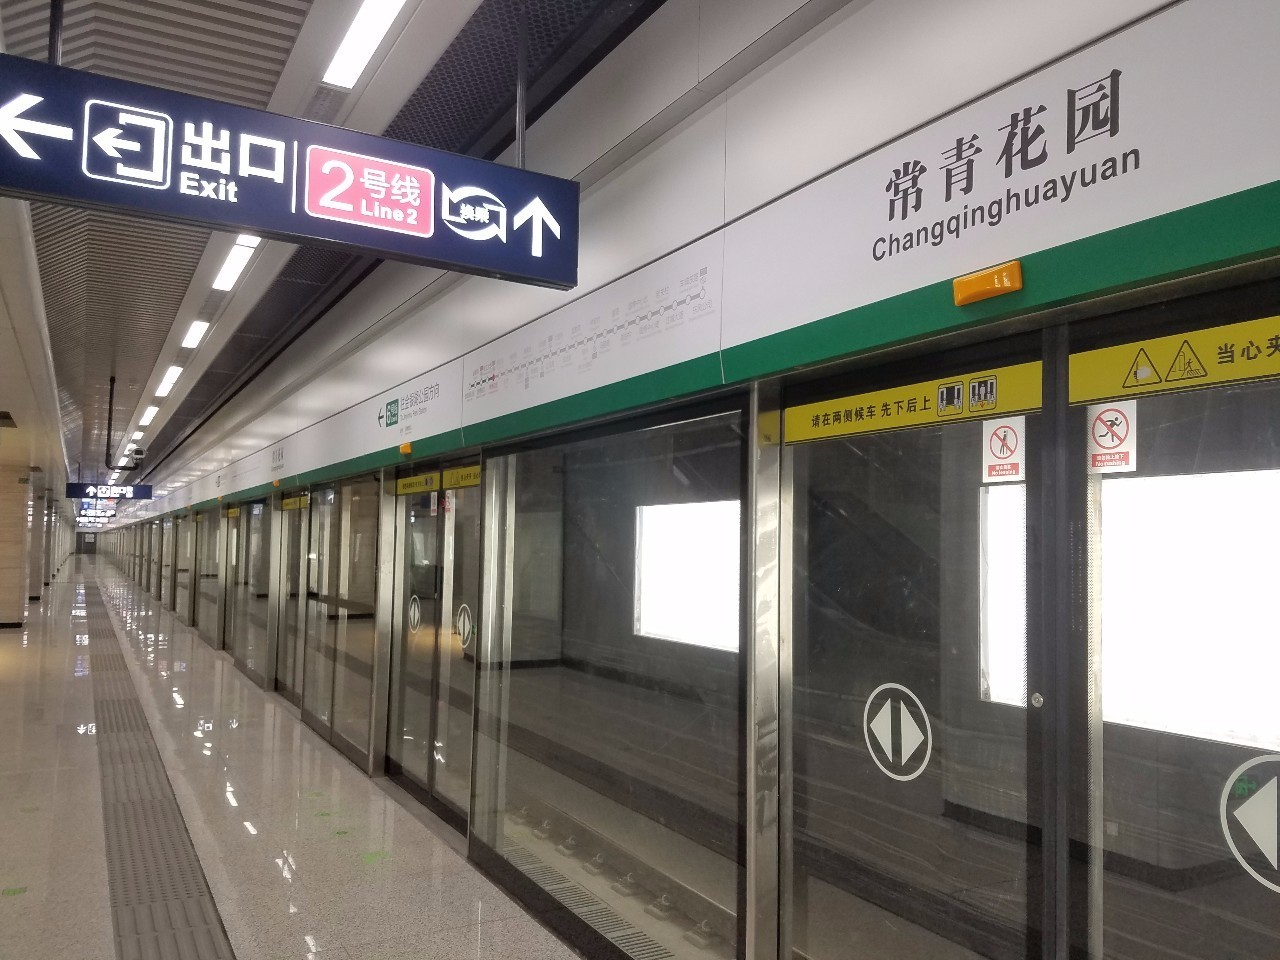 视觉大片来袭!武汉地铁6号线原来这么美……月底开通!